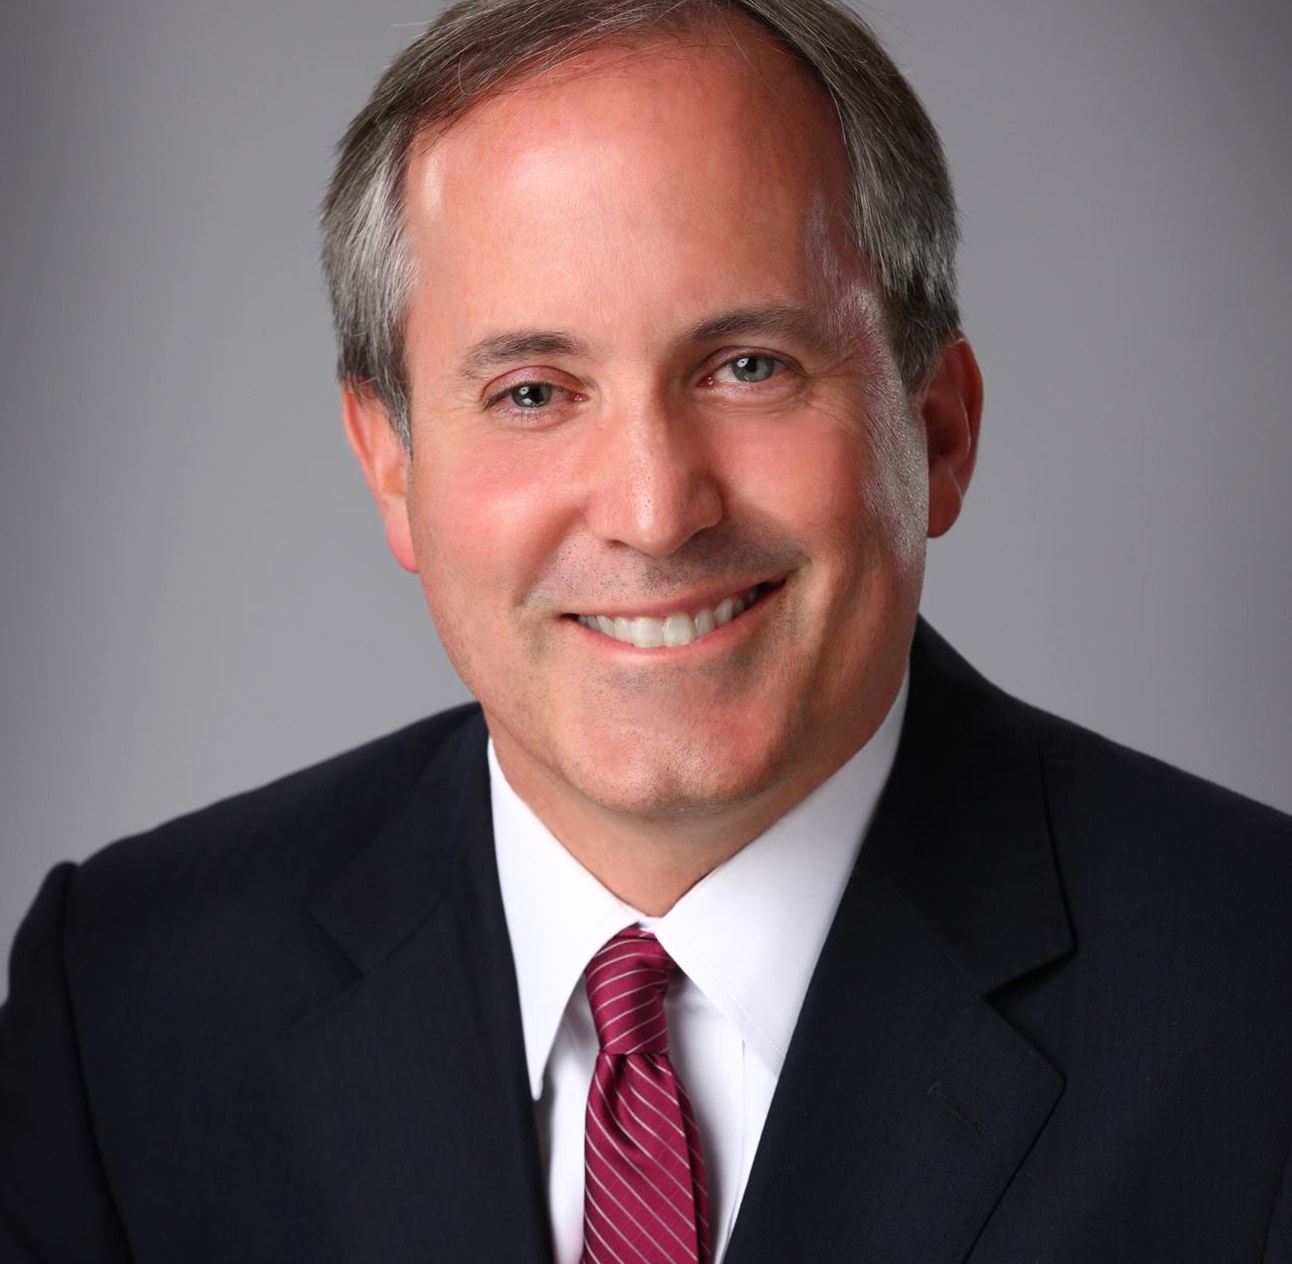 Texas attorney general Ken Paxton 